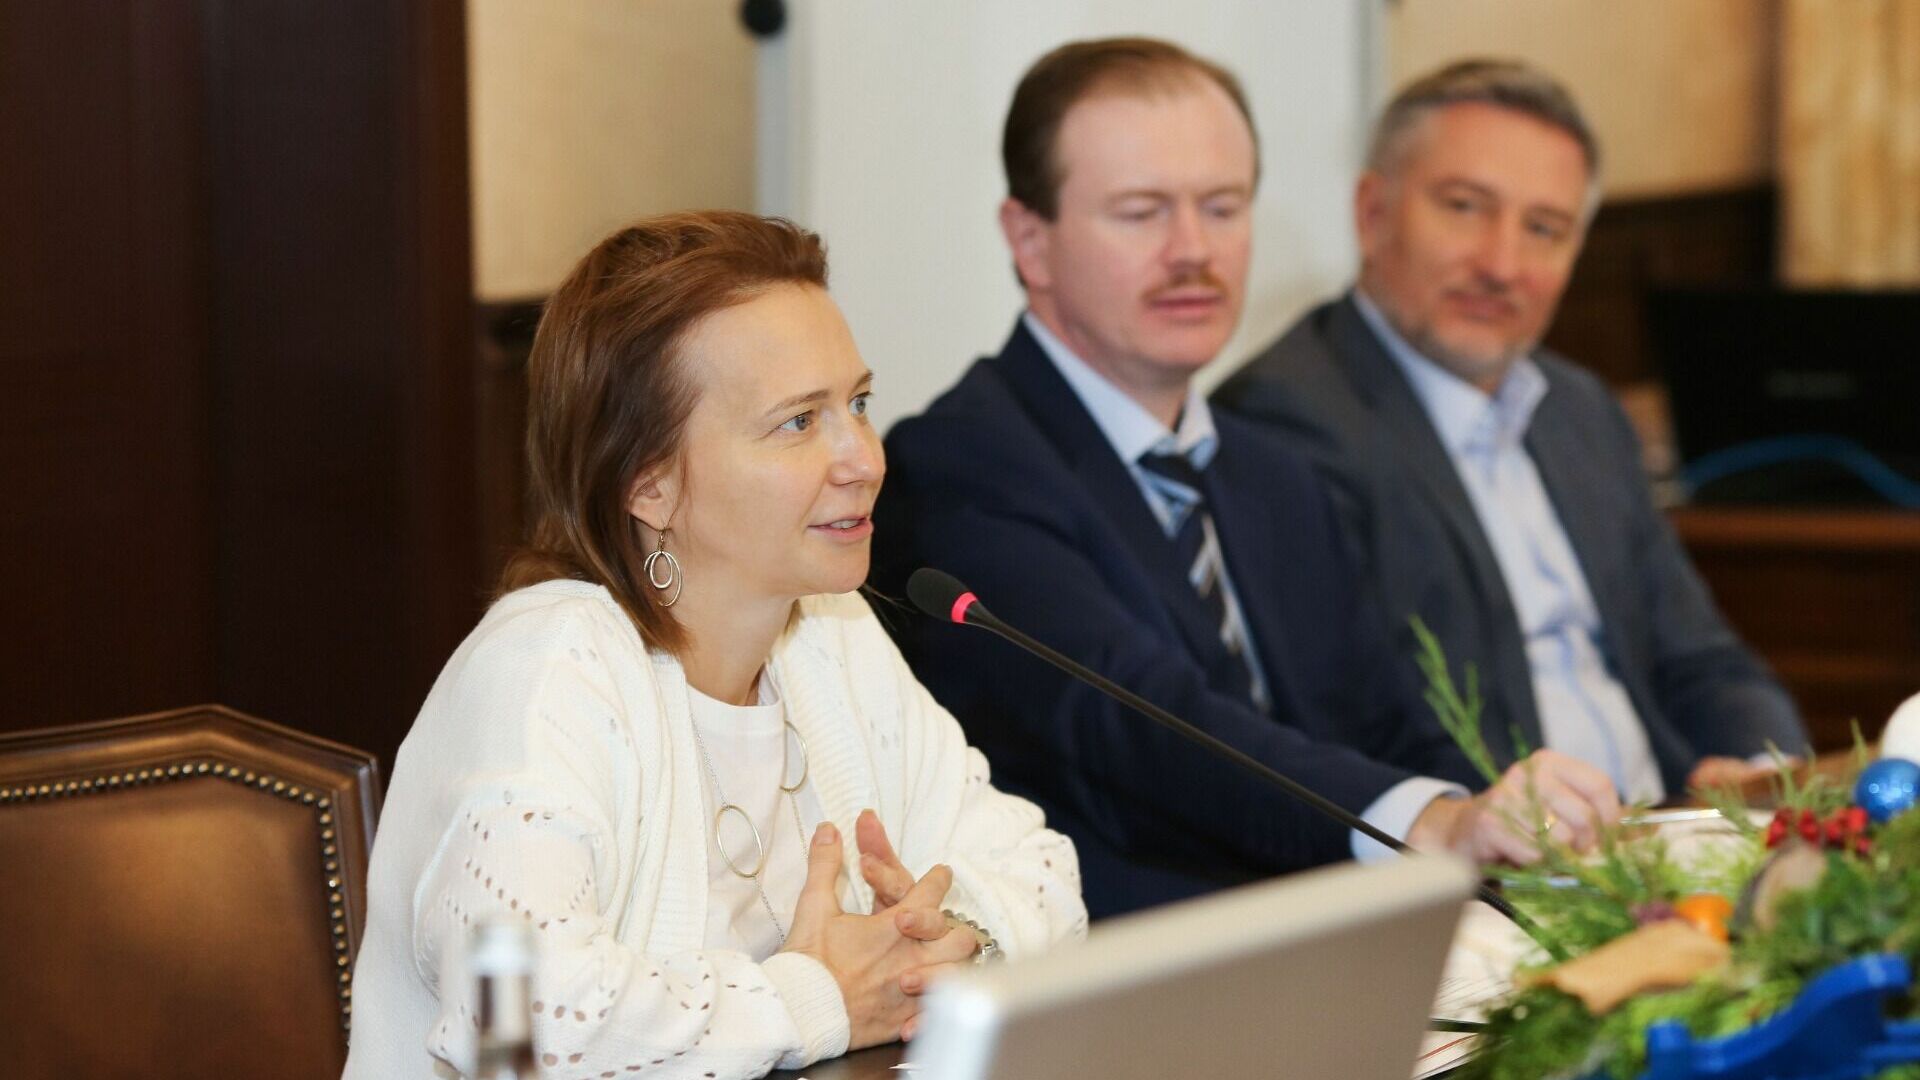 Форум «Амбассадоры устойчивого развития» объединил экспертов в сфере ESG